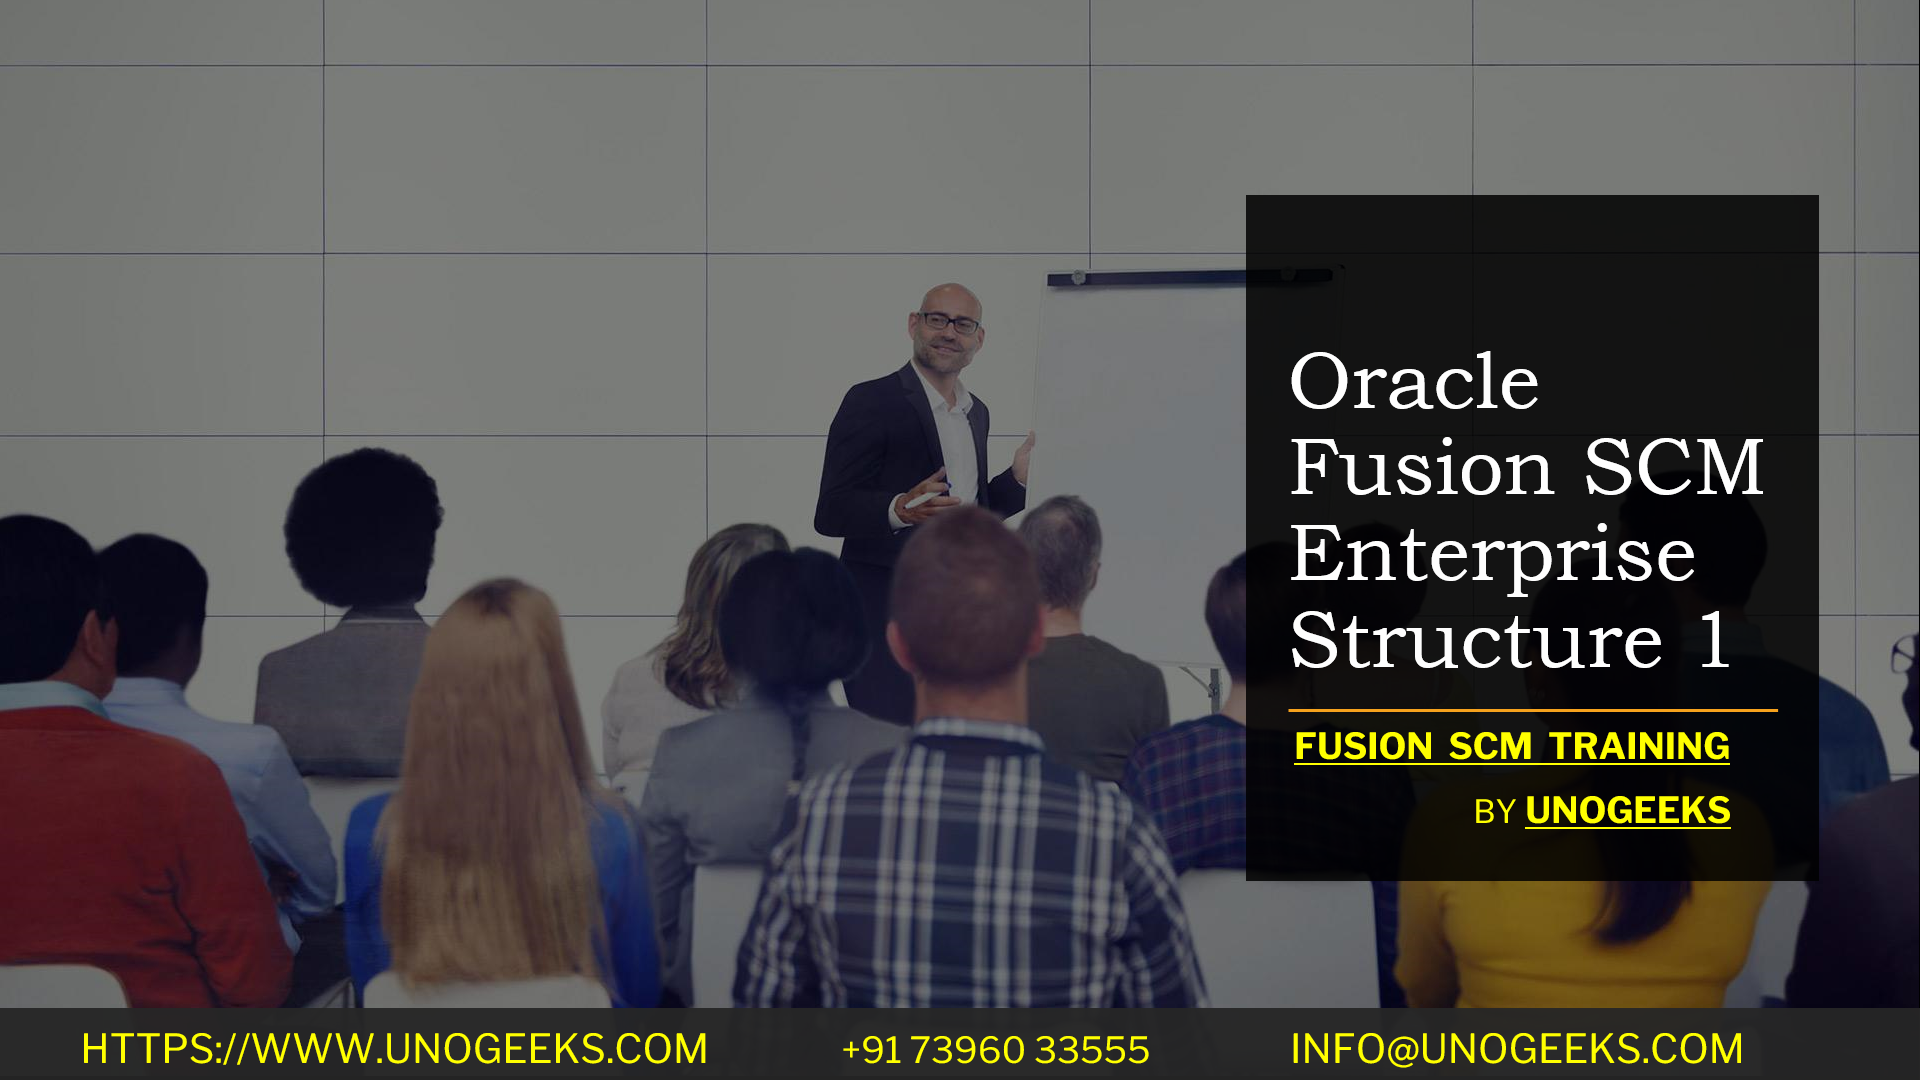 Oracle Fusion SCM Enterprise Structure 1